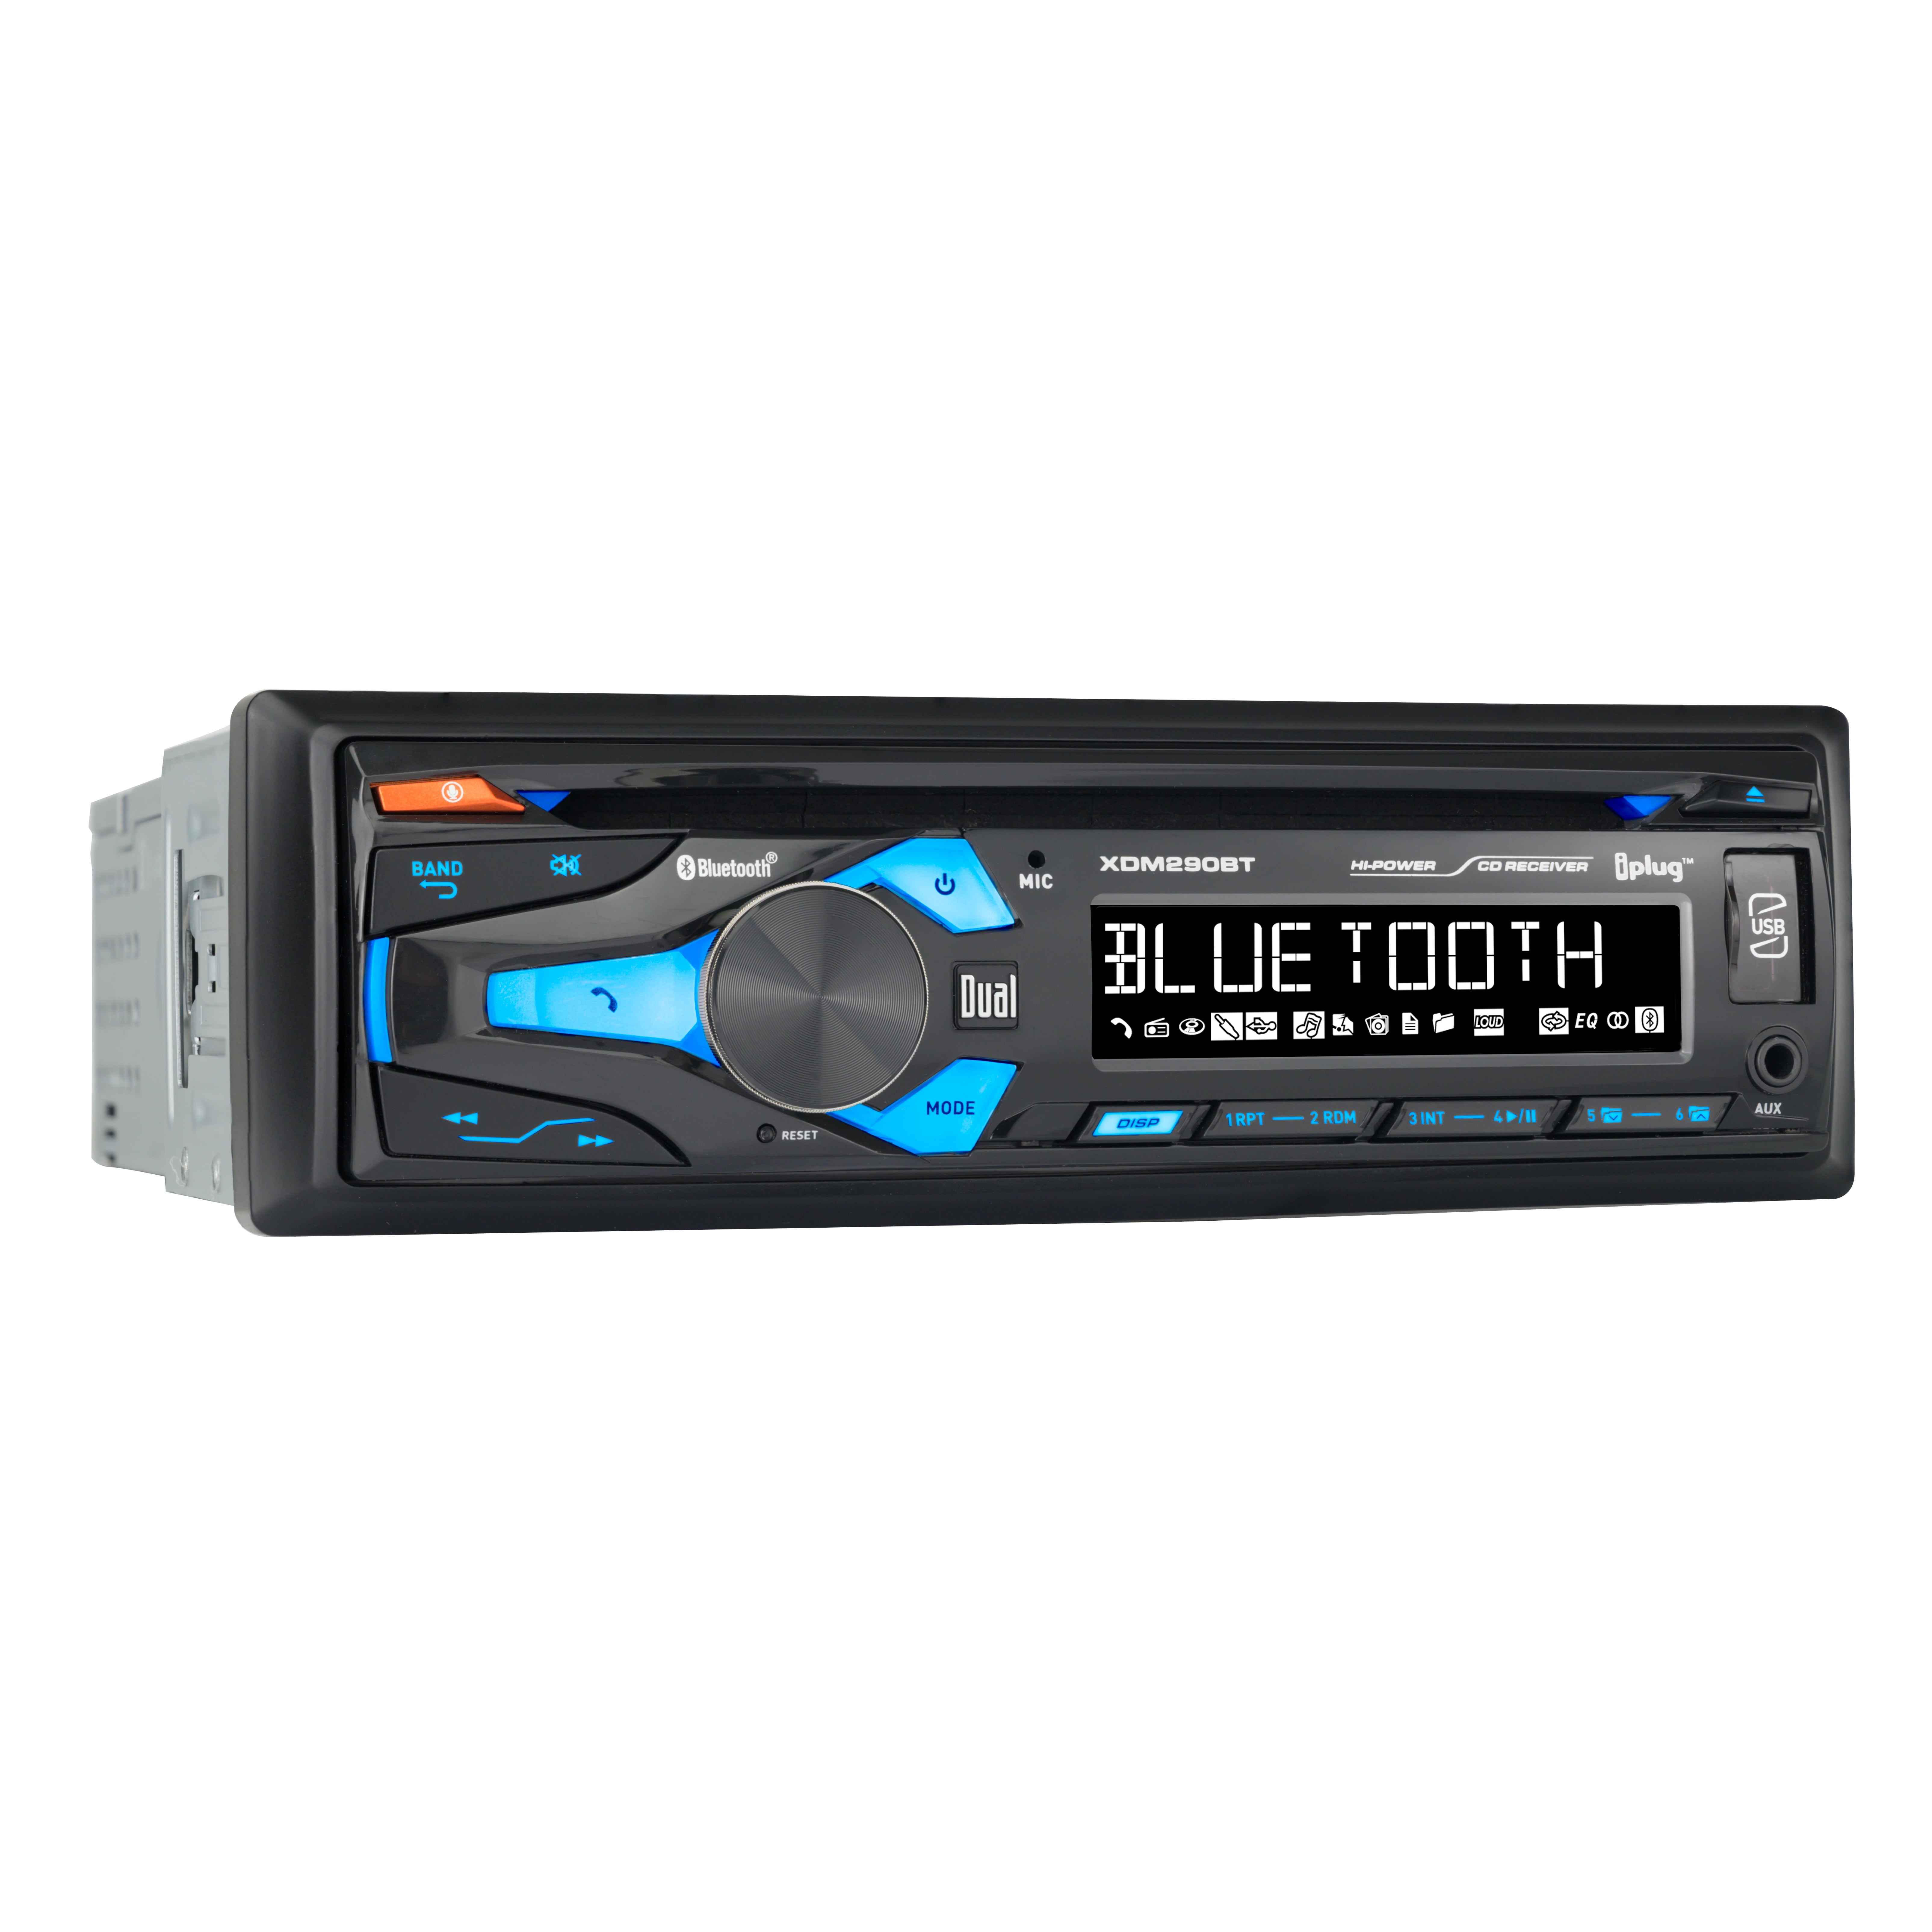 NEW Car Stereo Digital Media Receiver with Bluetooth MP3/USB/WMA AM/FM Radio 